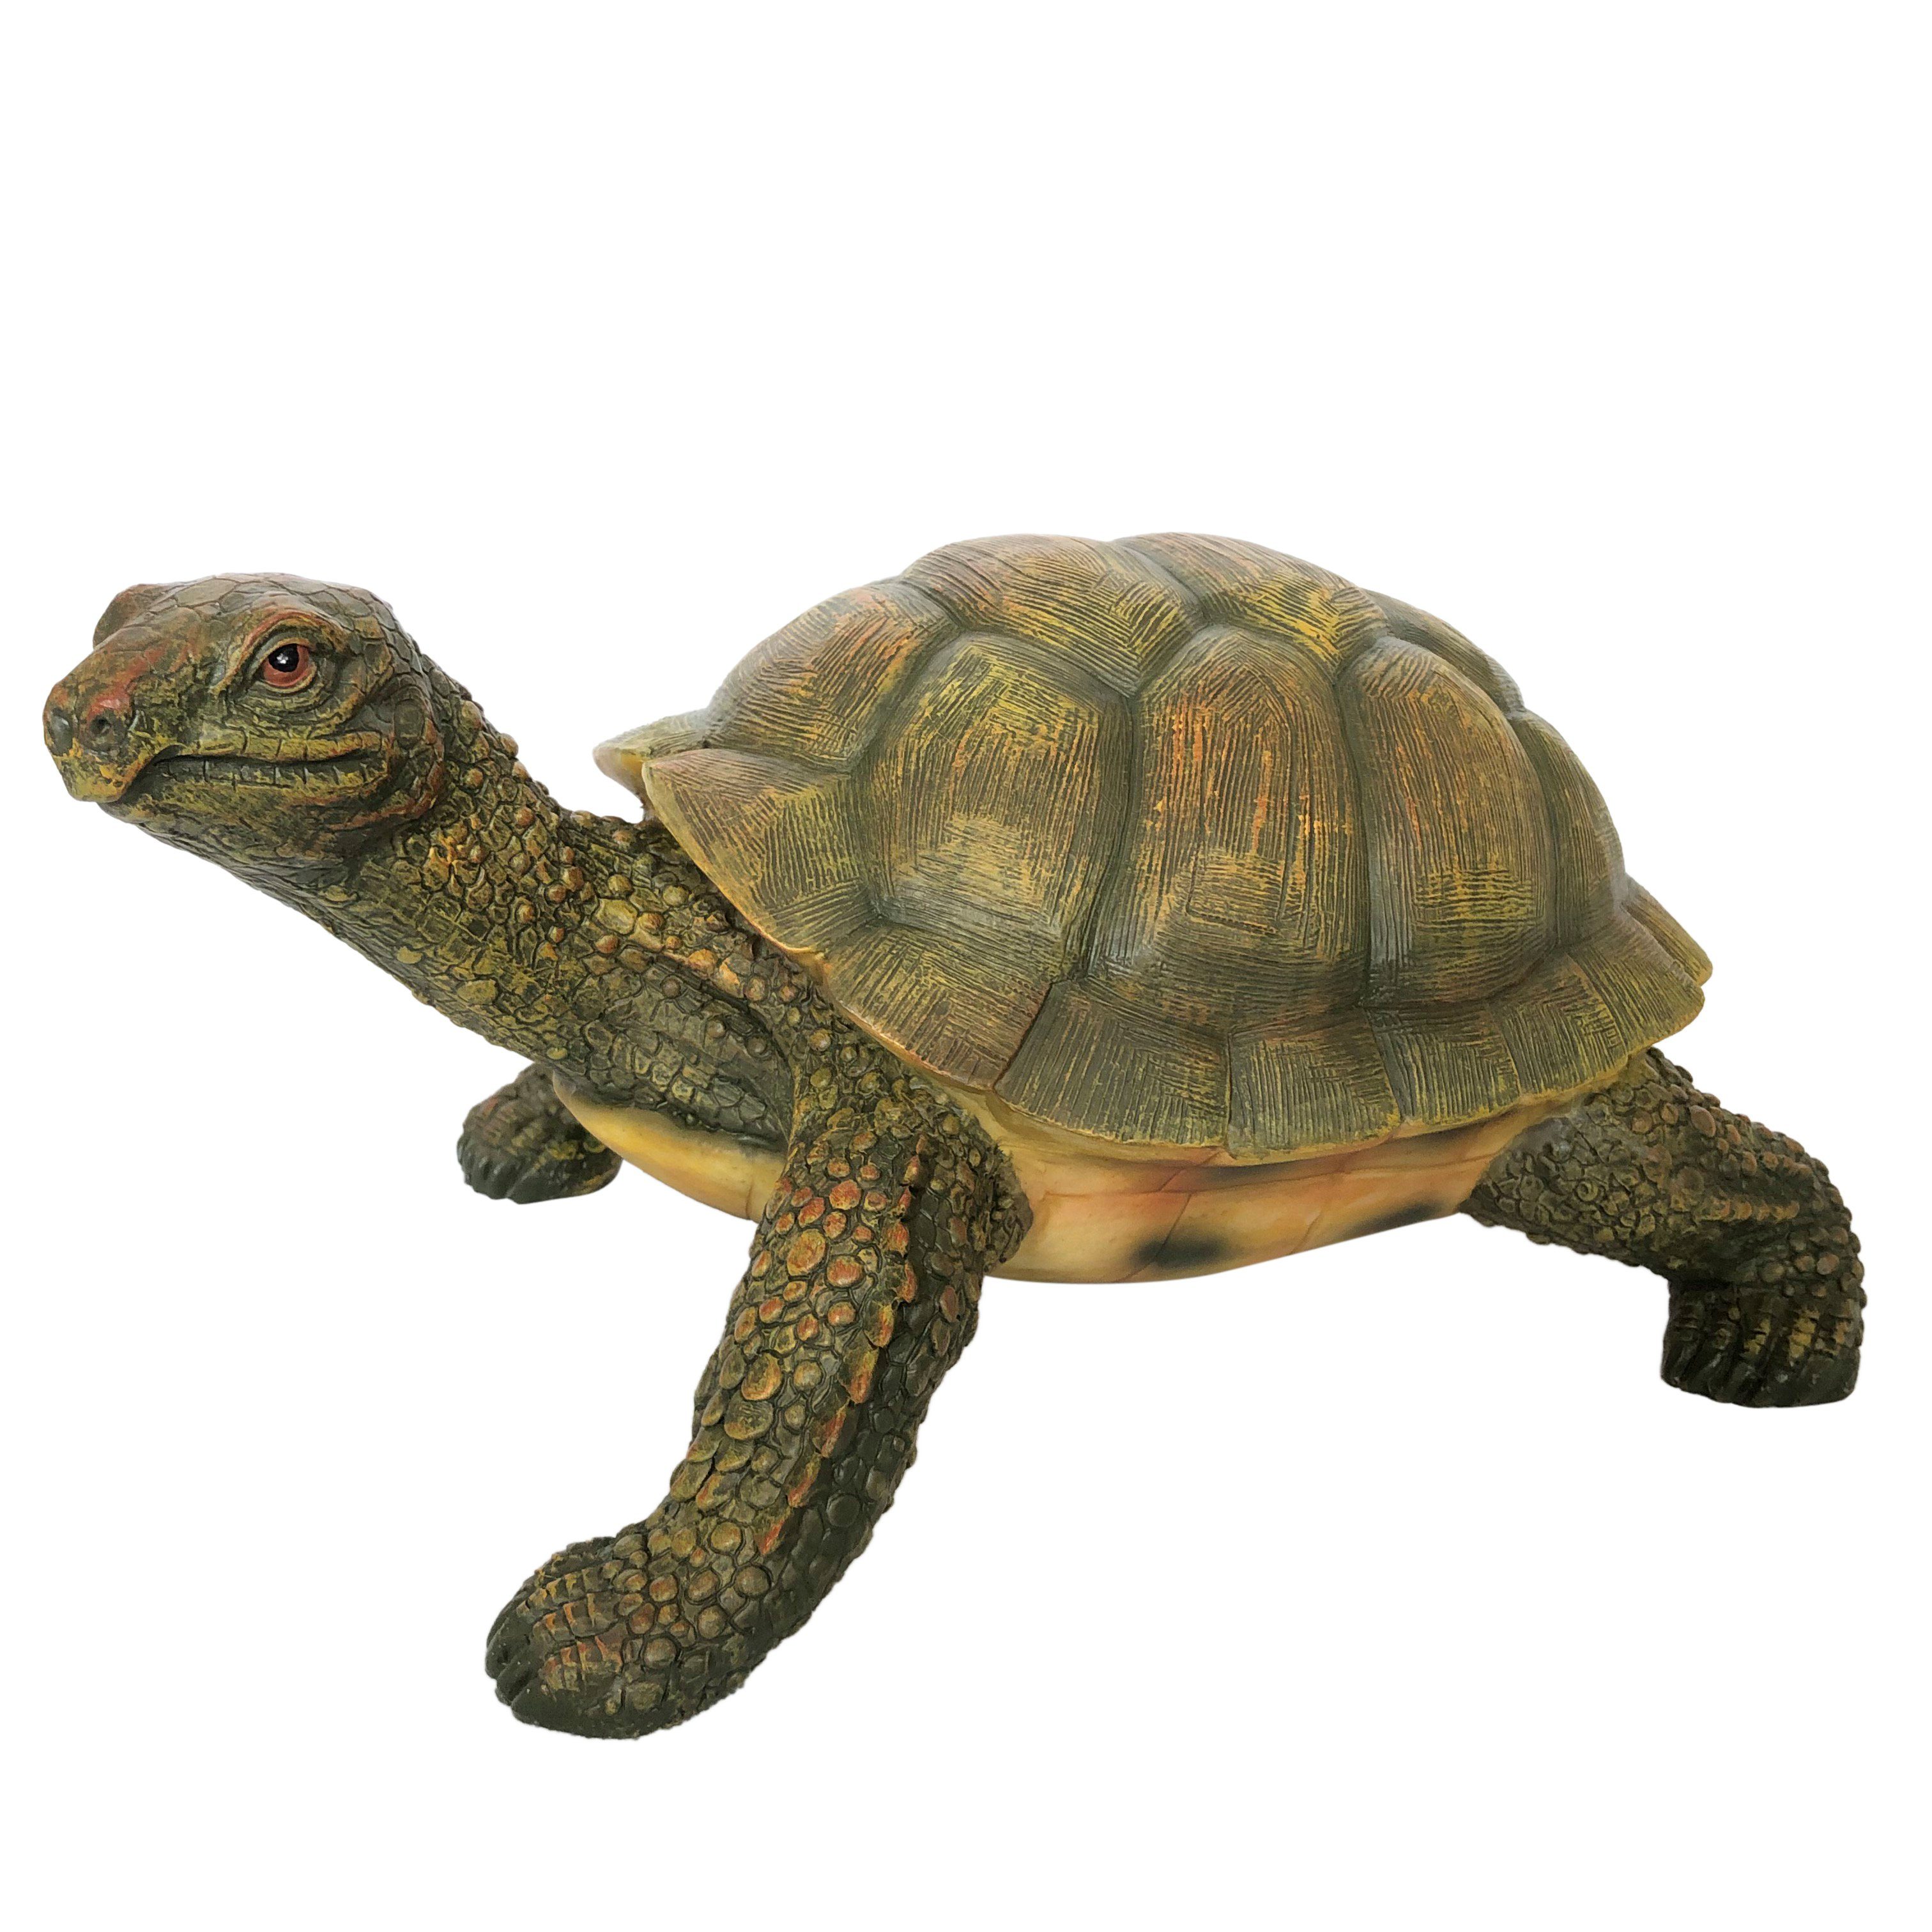 Online-Fuchs Gartenfigur Schildkröte für außen geeigent Gartenteich Deko Figur, Maße: 32 x 22 x 15 cm witterungsbeständig Garten Terrasse